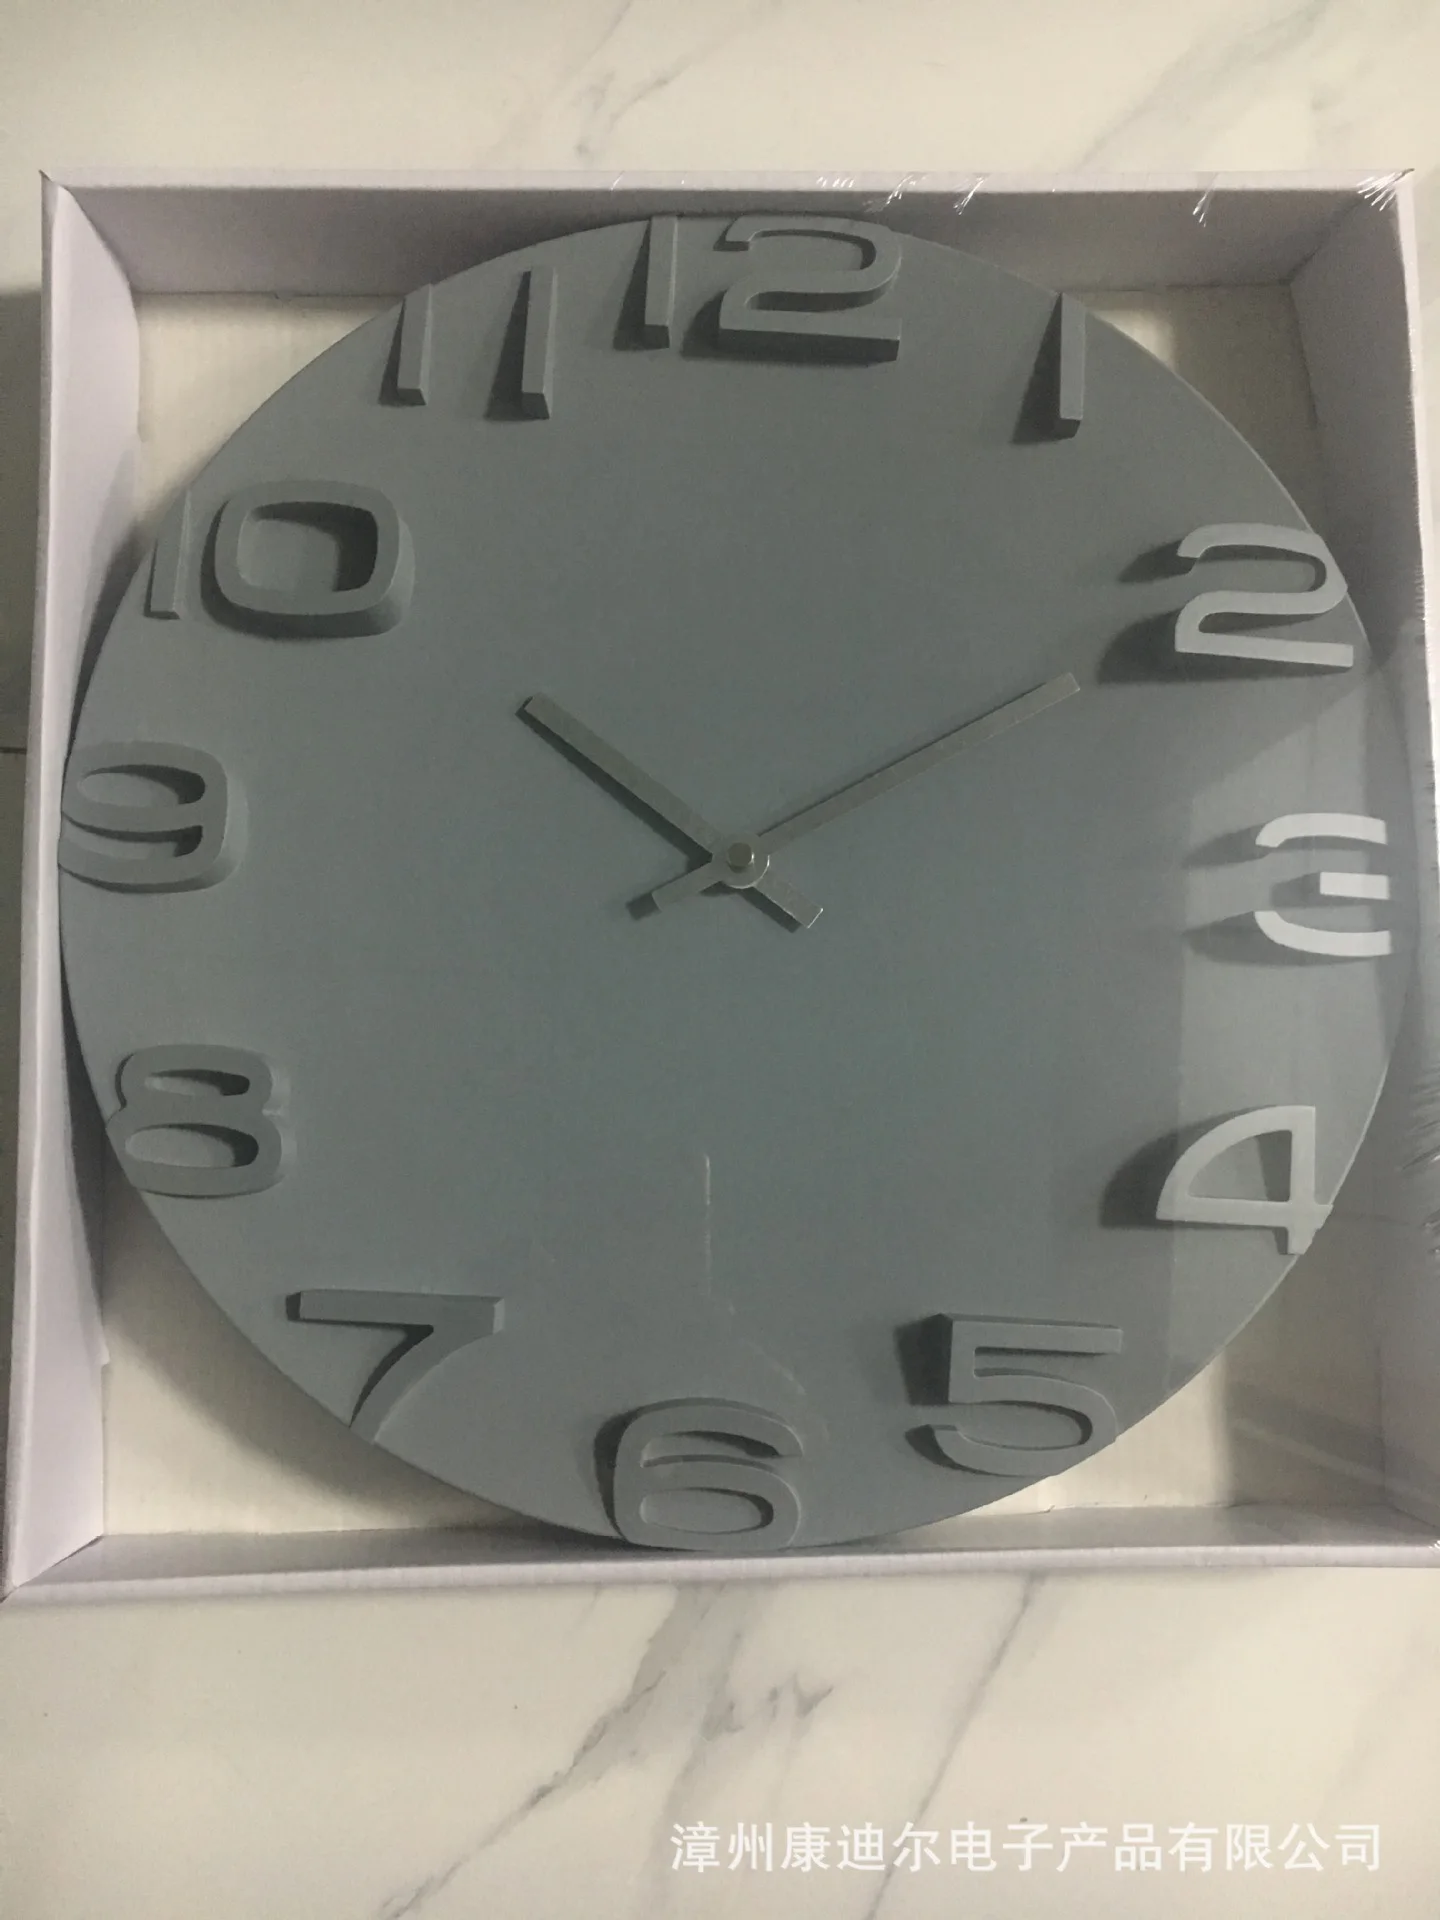 3D настенные часы современный дизайн украшения для гостиной скандинавские короткие Висячие кварцевые часы большие настенные часы домашний декор бесшумные 14 дюймов - Цвет: gray